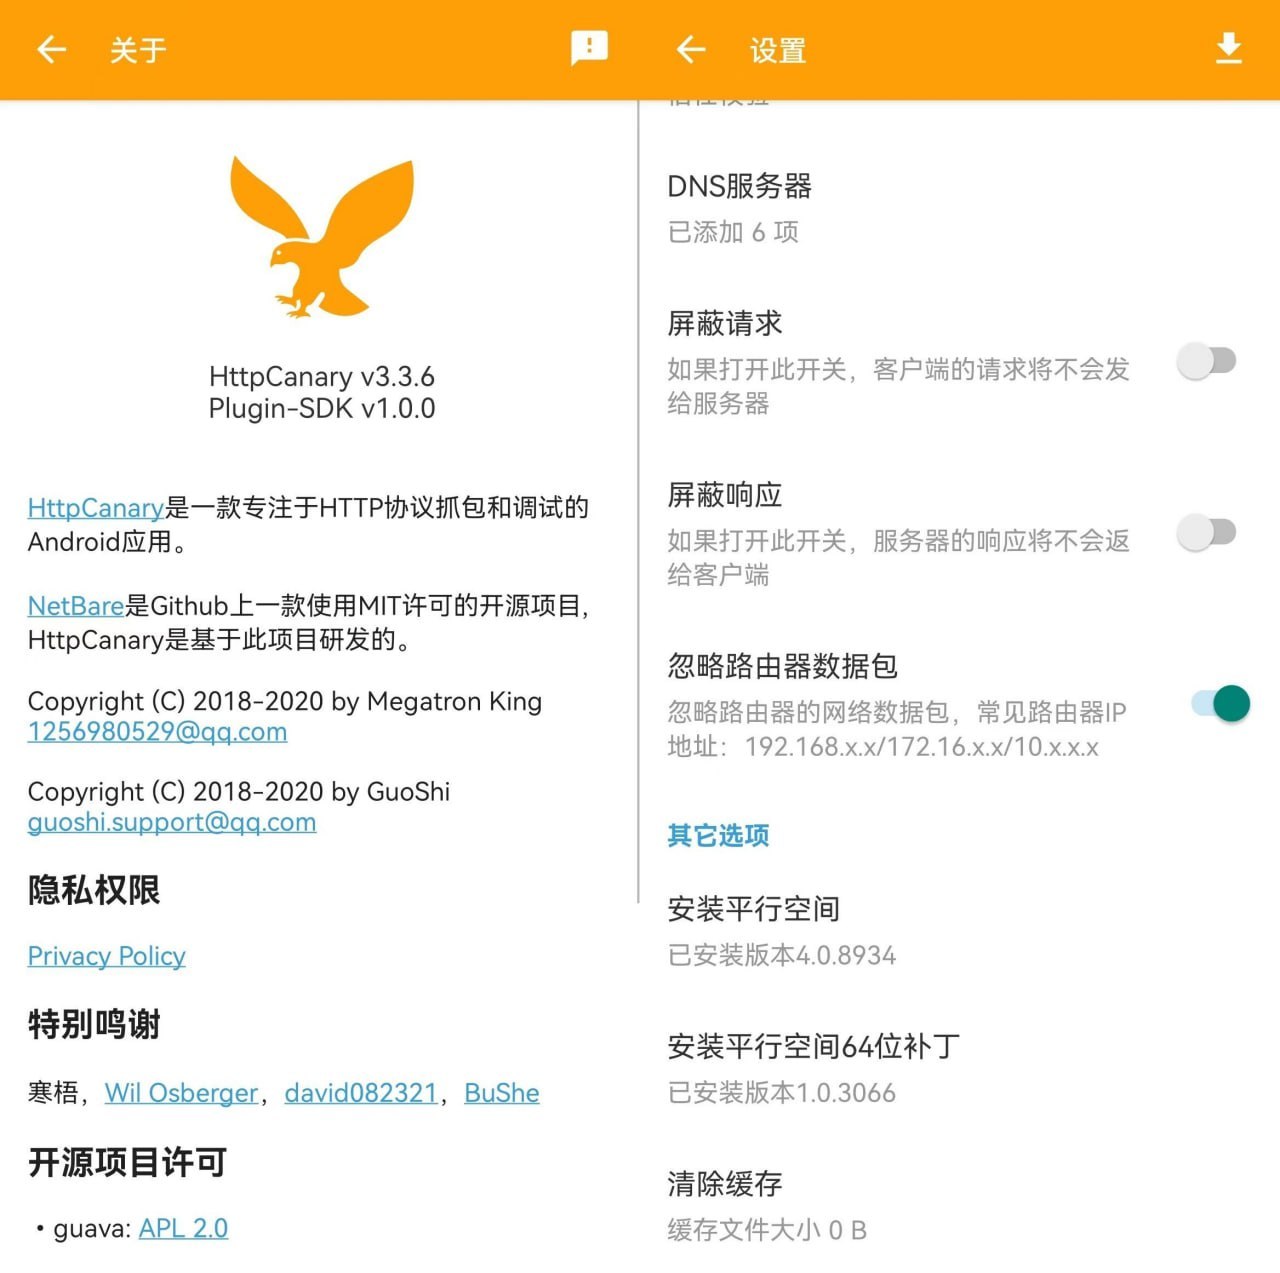 小黄鸟安卓抓包工具 - httpcanary 软件App 第1张